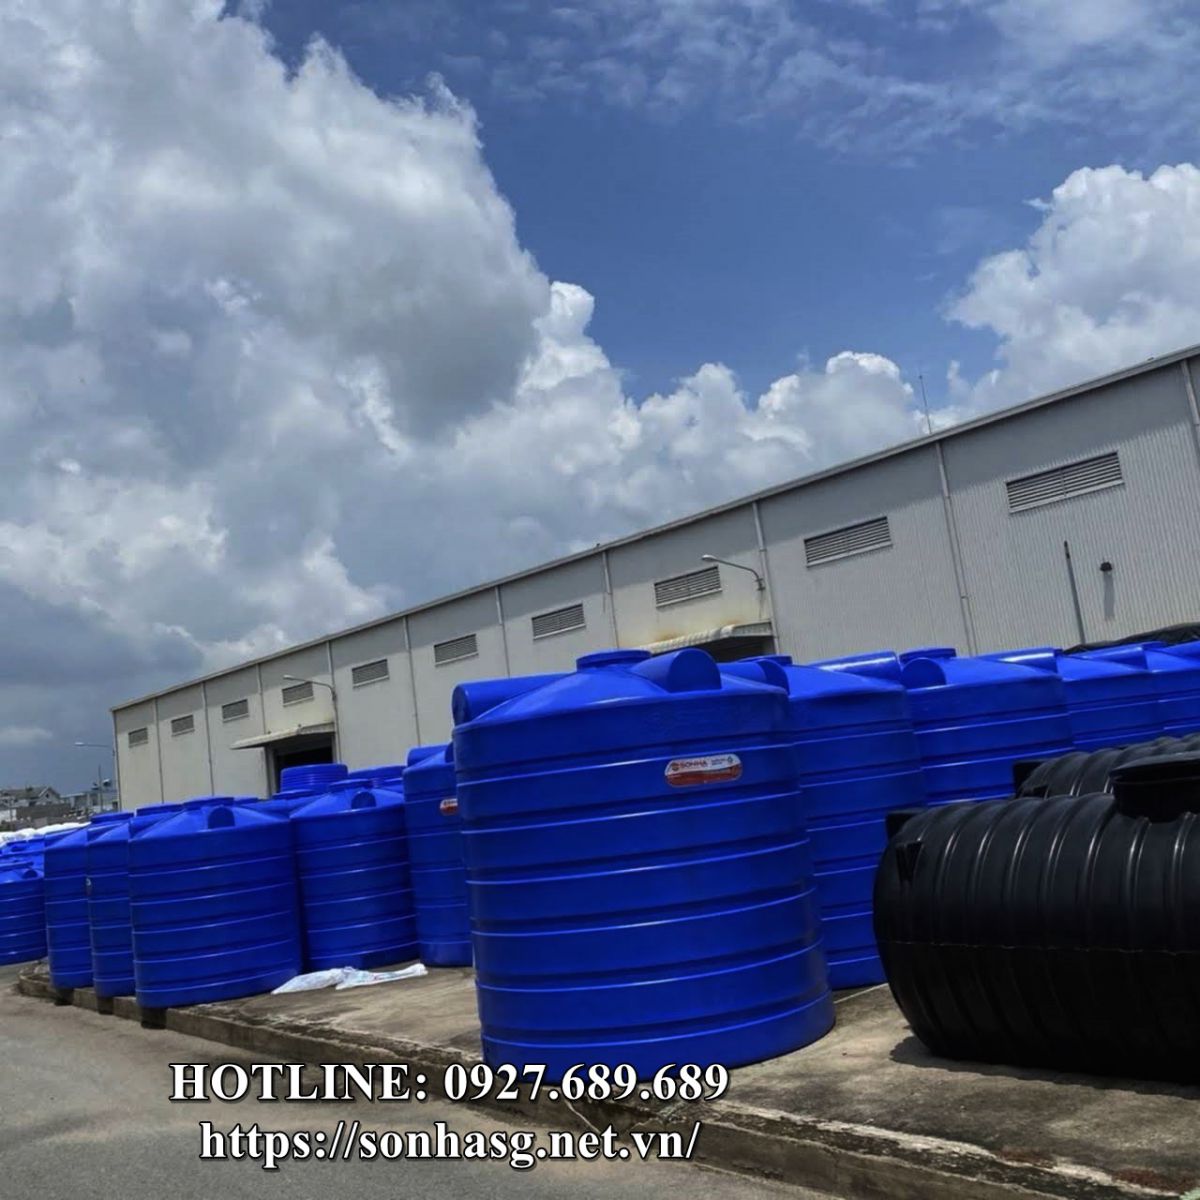 Đơn vị cung cấp bồn nước nhựa Sơn Hà 300l tại Hà Nội